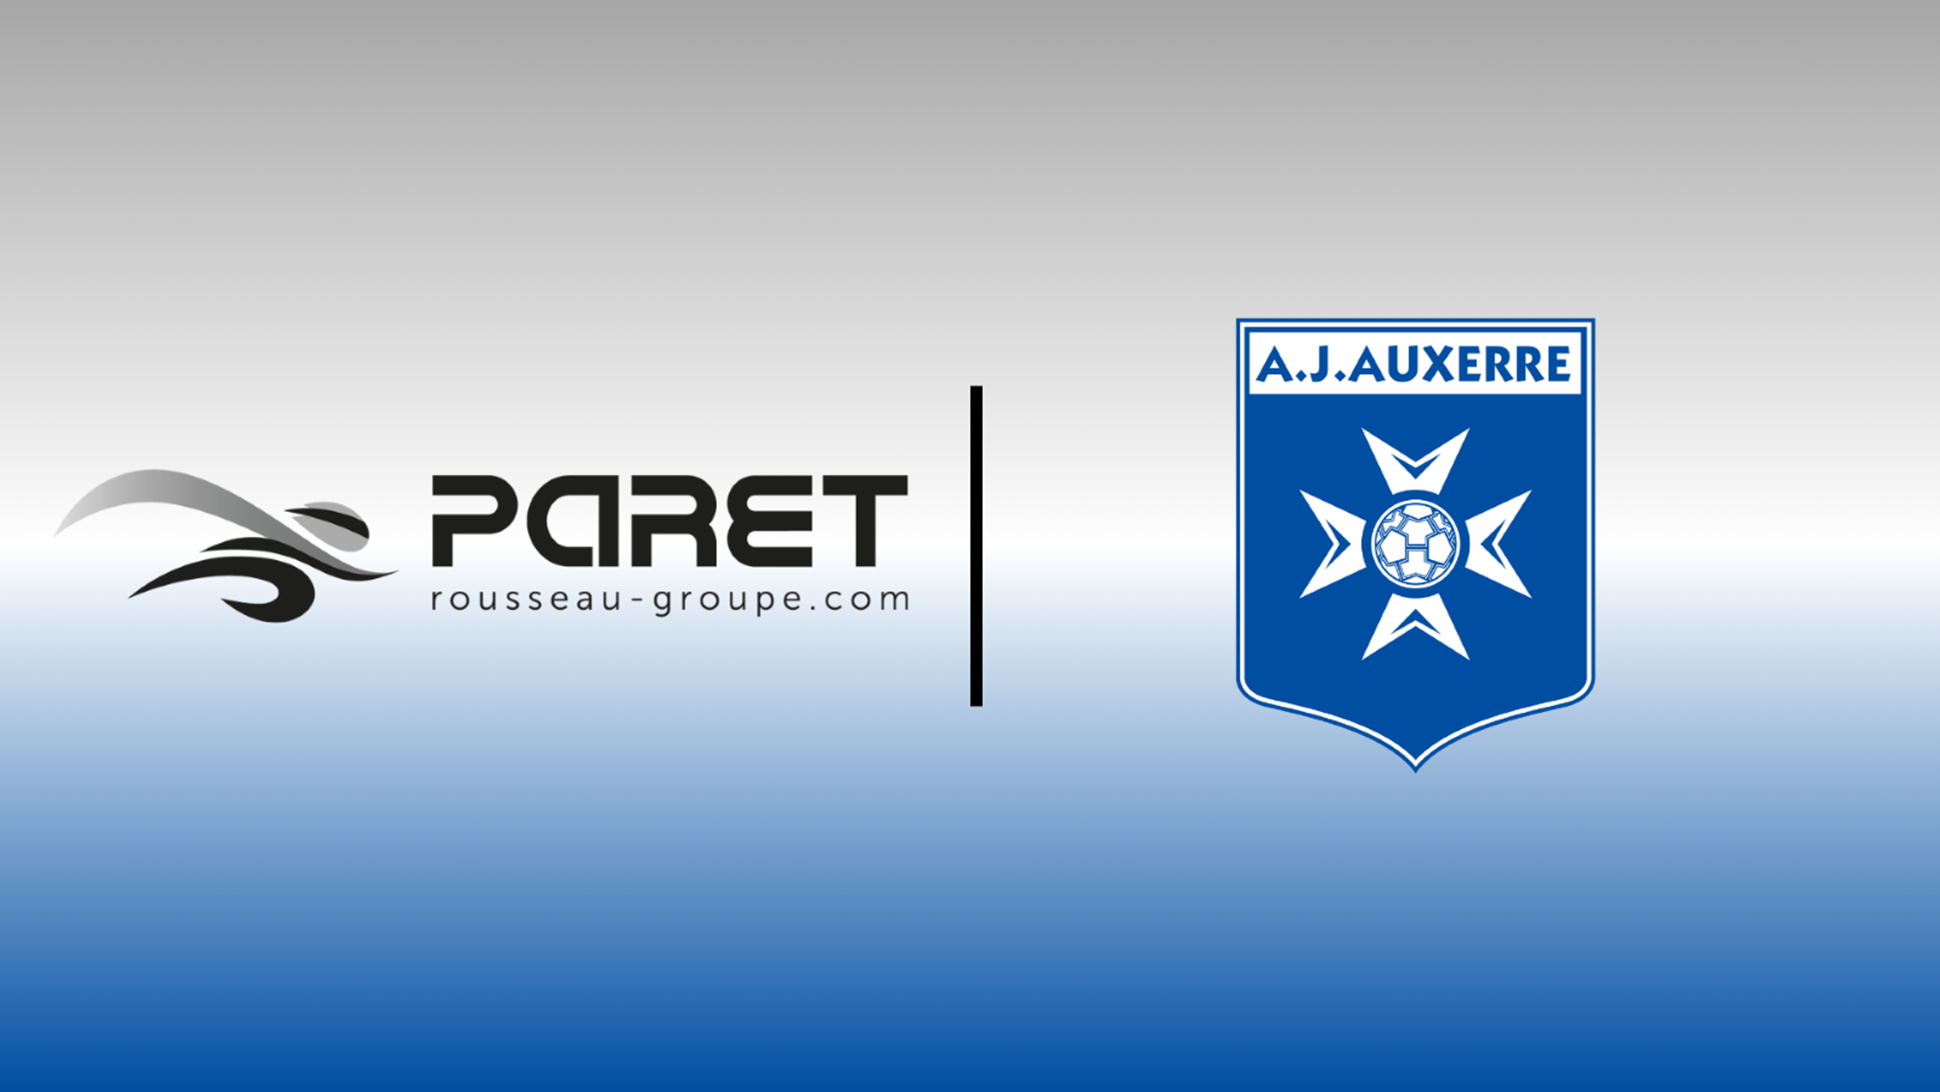 Les Transports Paret applaudissent les champions : l’AJ Auxerre, en route vers la ligue 1!